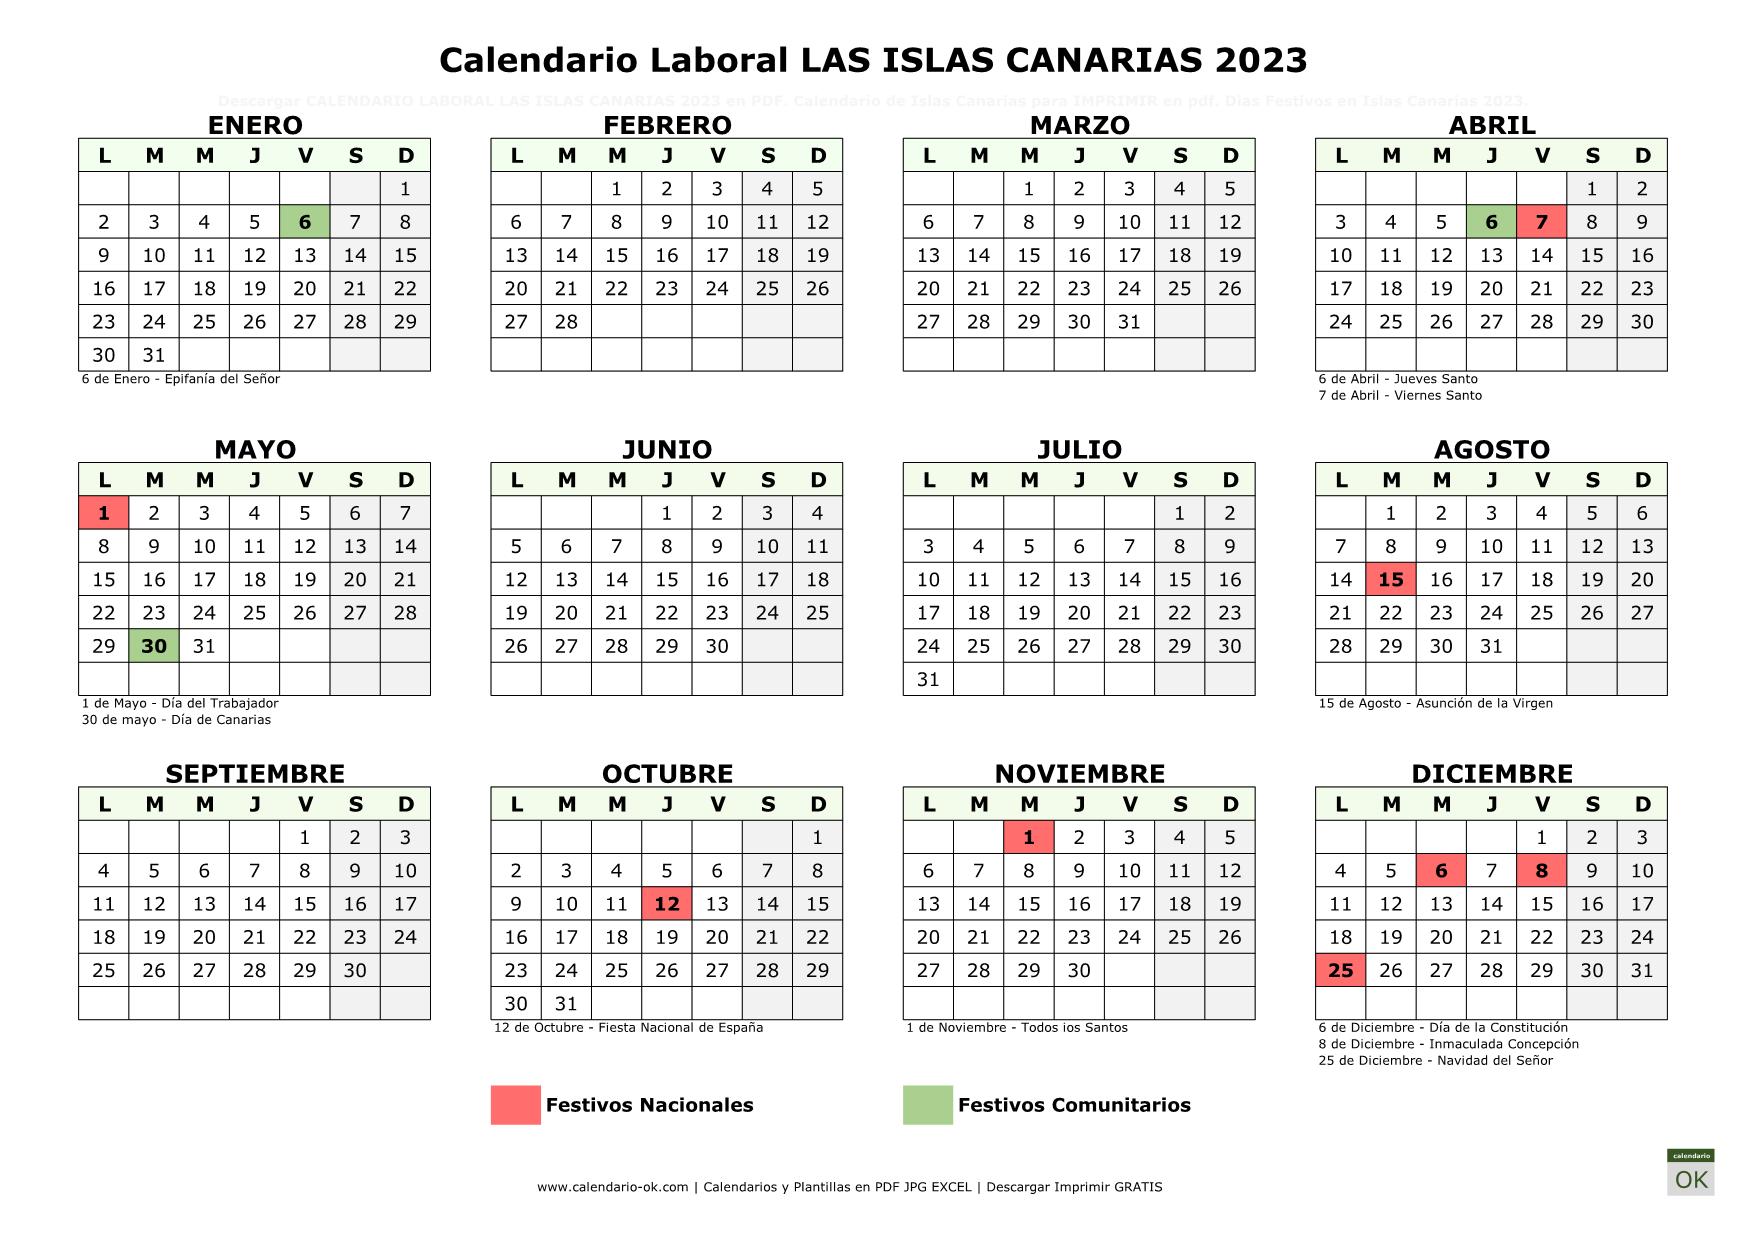 Calendario Laboral ISLAS CANARIAS 2023 horizontal